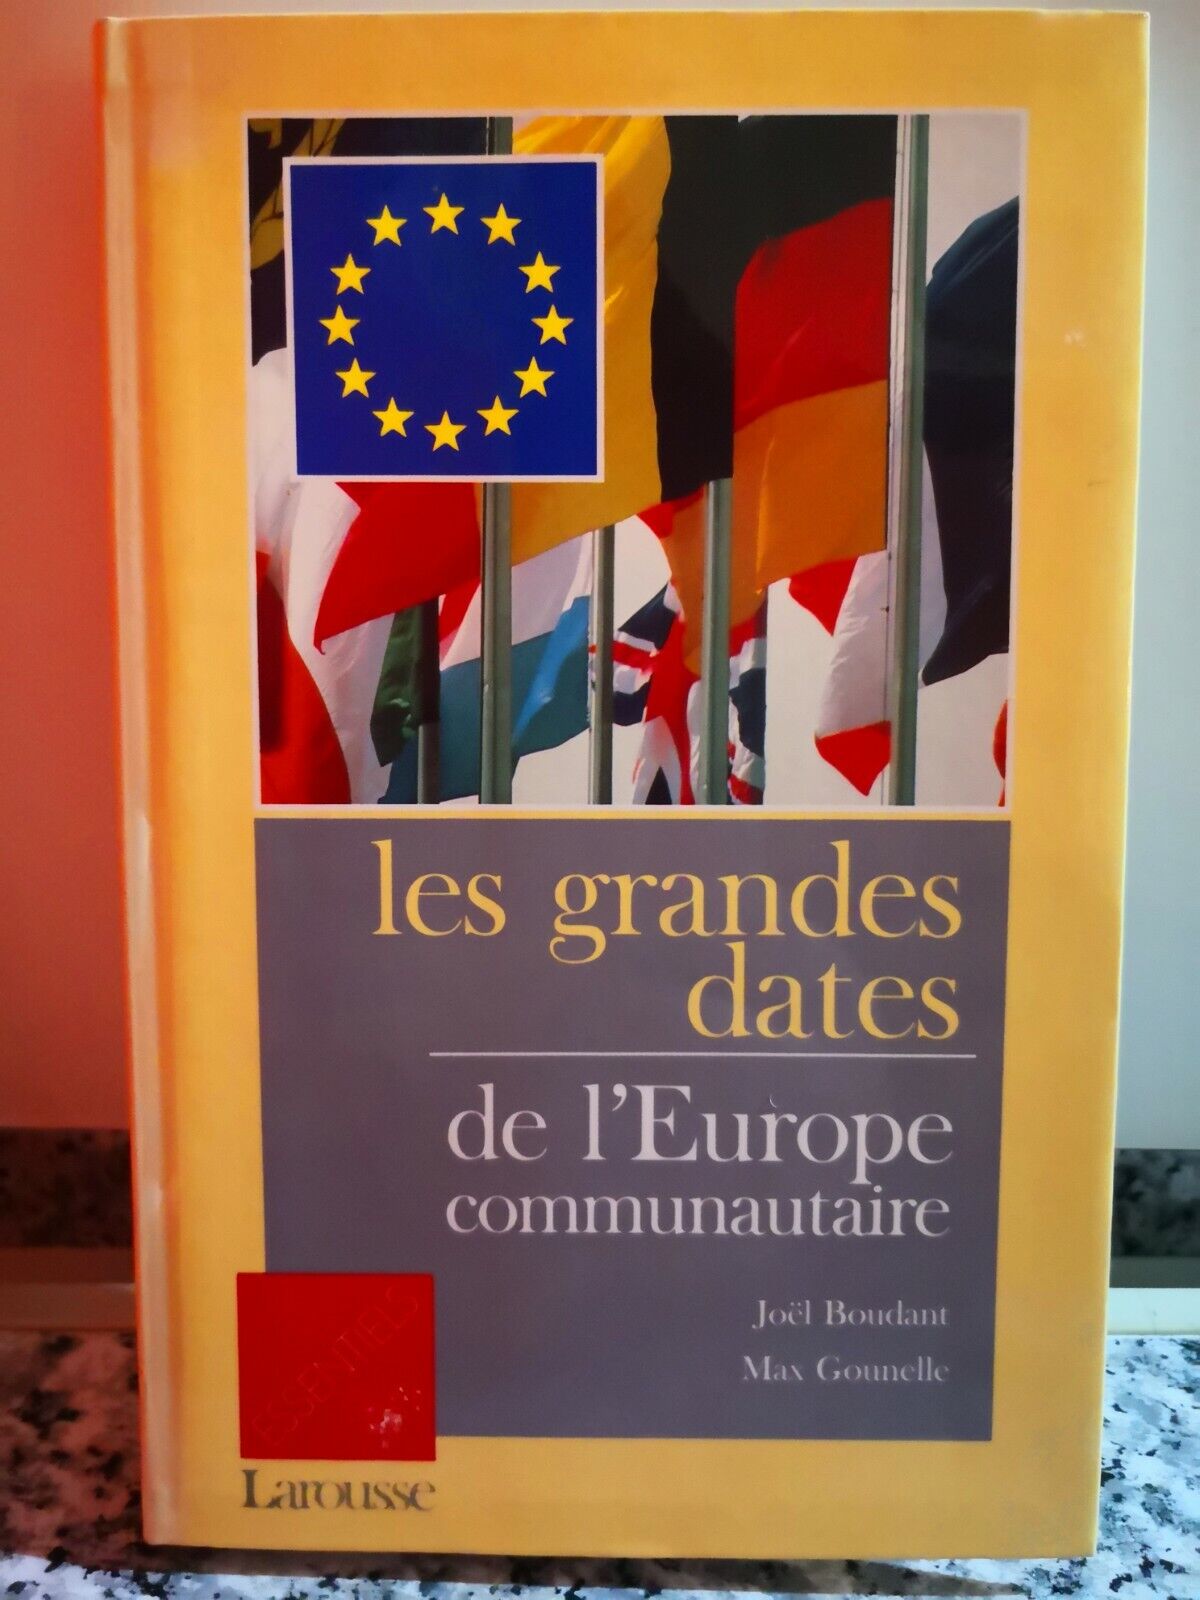 Les grandes dates de L'europe communautaire di Boudant , Gounelle,  1989, -F